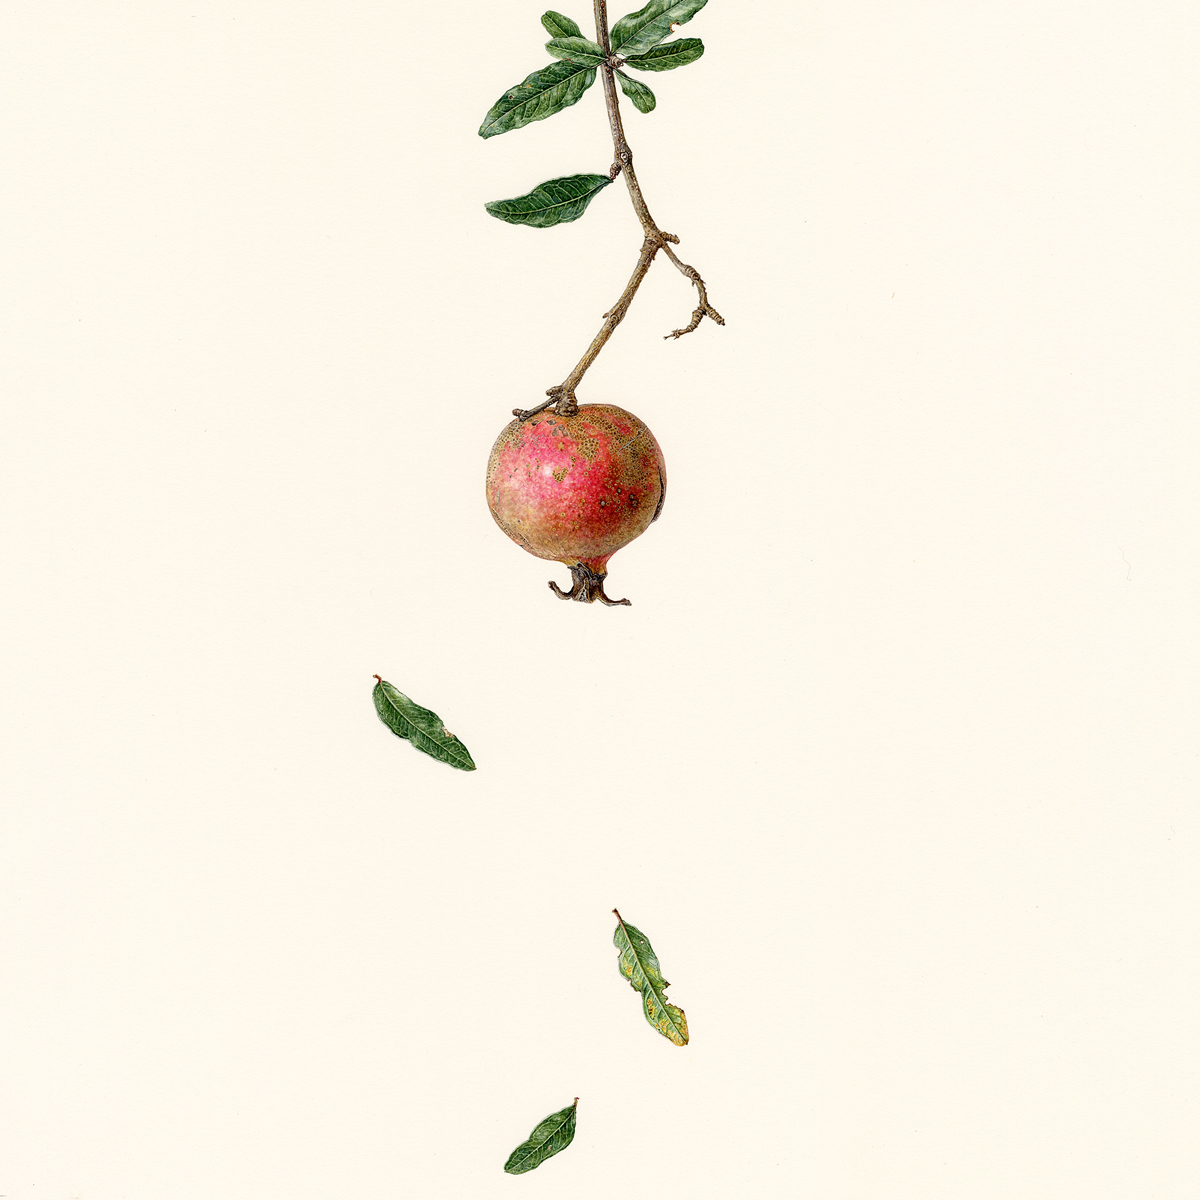 徒然の草　柘榴　Turezure no kusa - Pomegranate
 2020 / Watercolor on paper / 35 x 35 cm